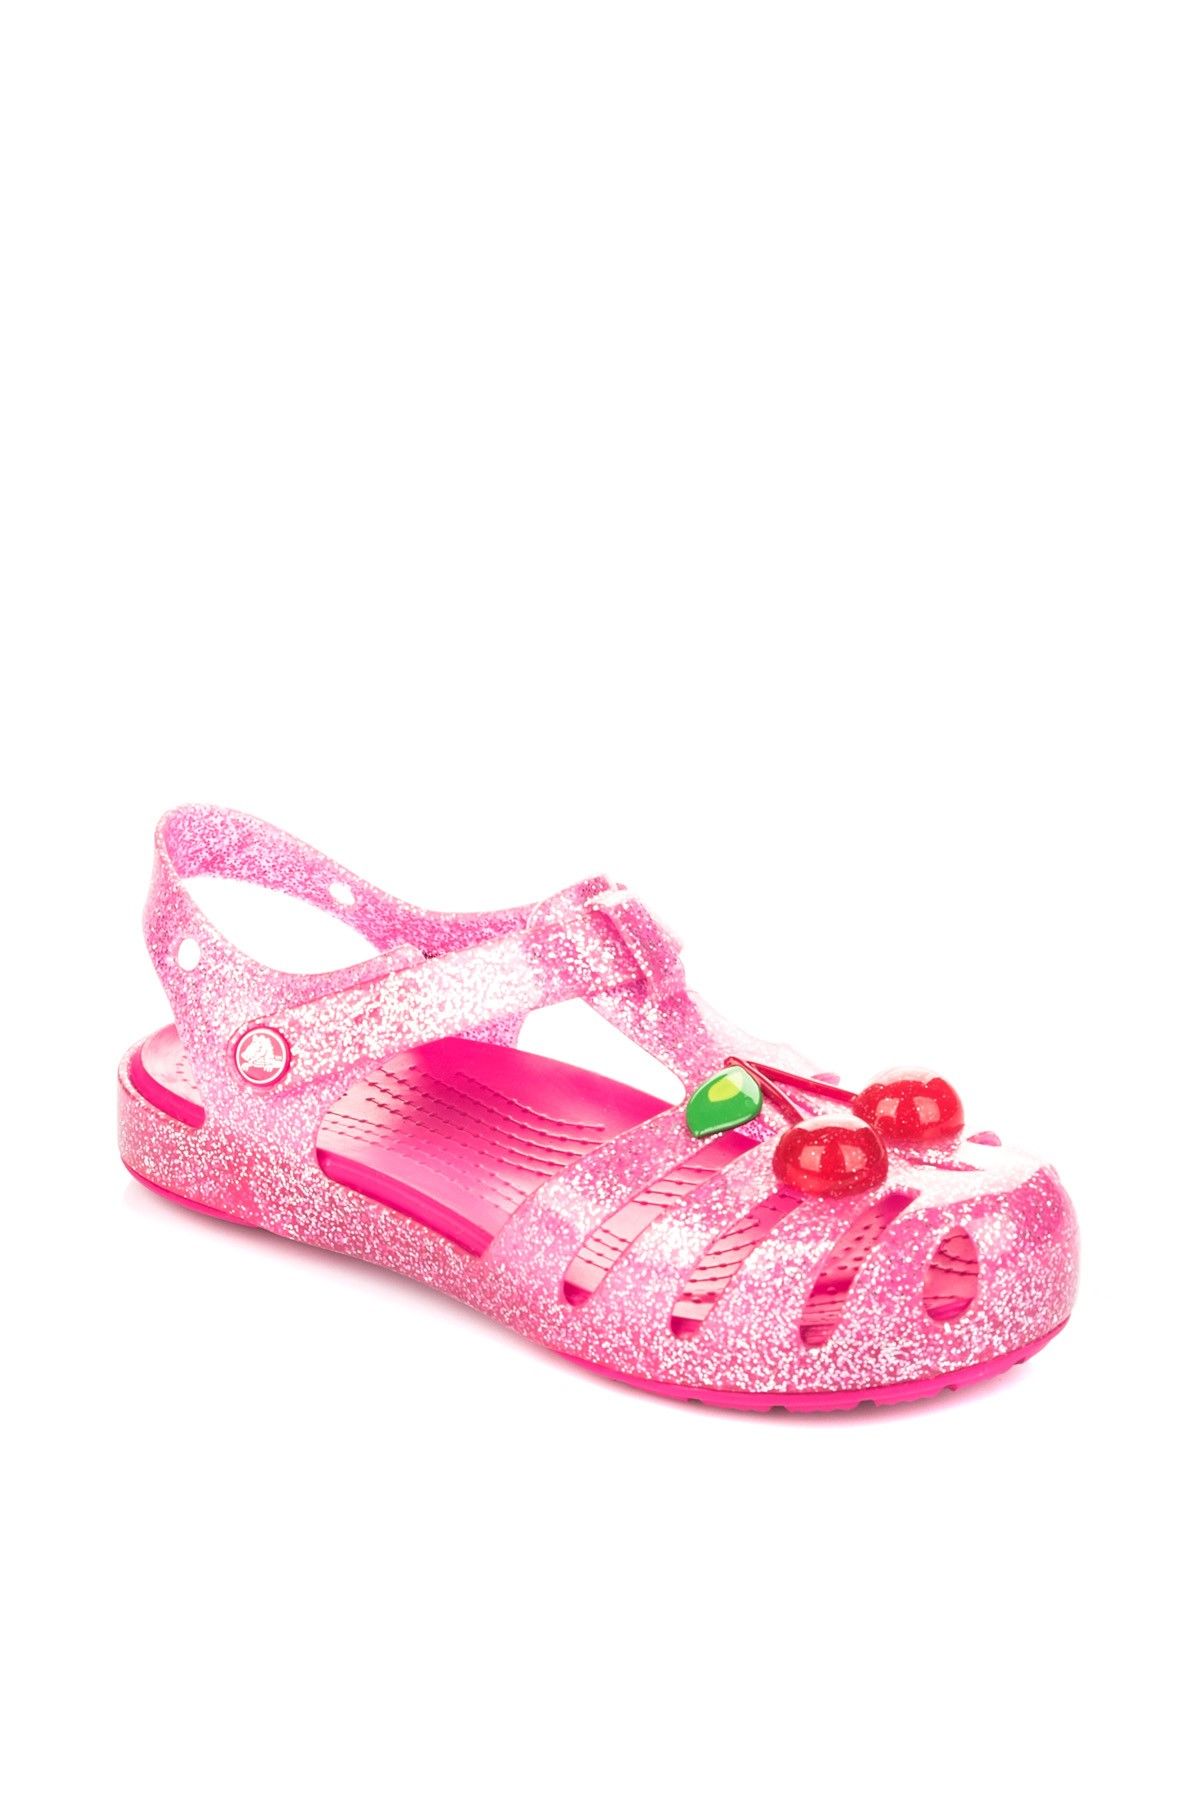 Crocs Pembe Kız Çocuk Sandalet 204529